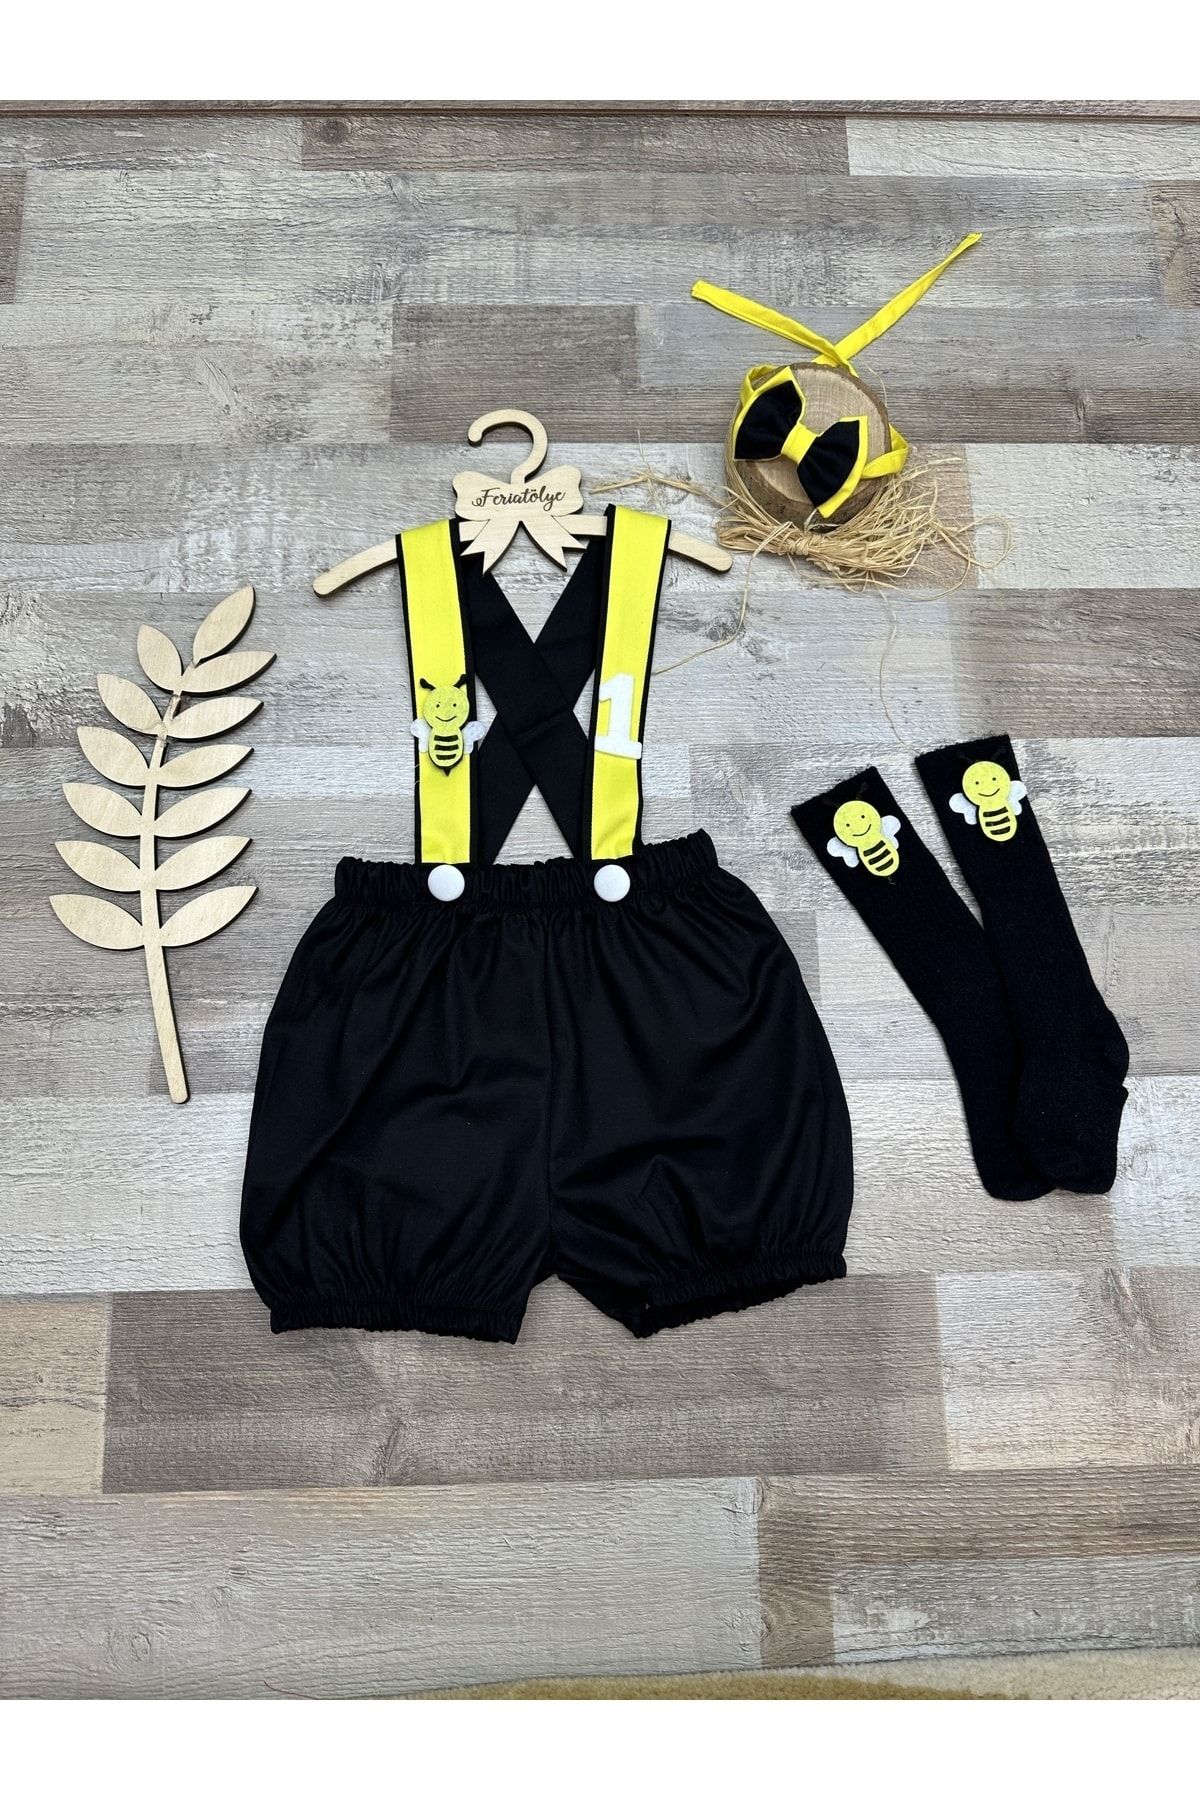 Feriatolye Arı konsepti siyah sarı erkek bebek 1 yaş salopet doğum günü kıyafetii